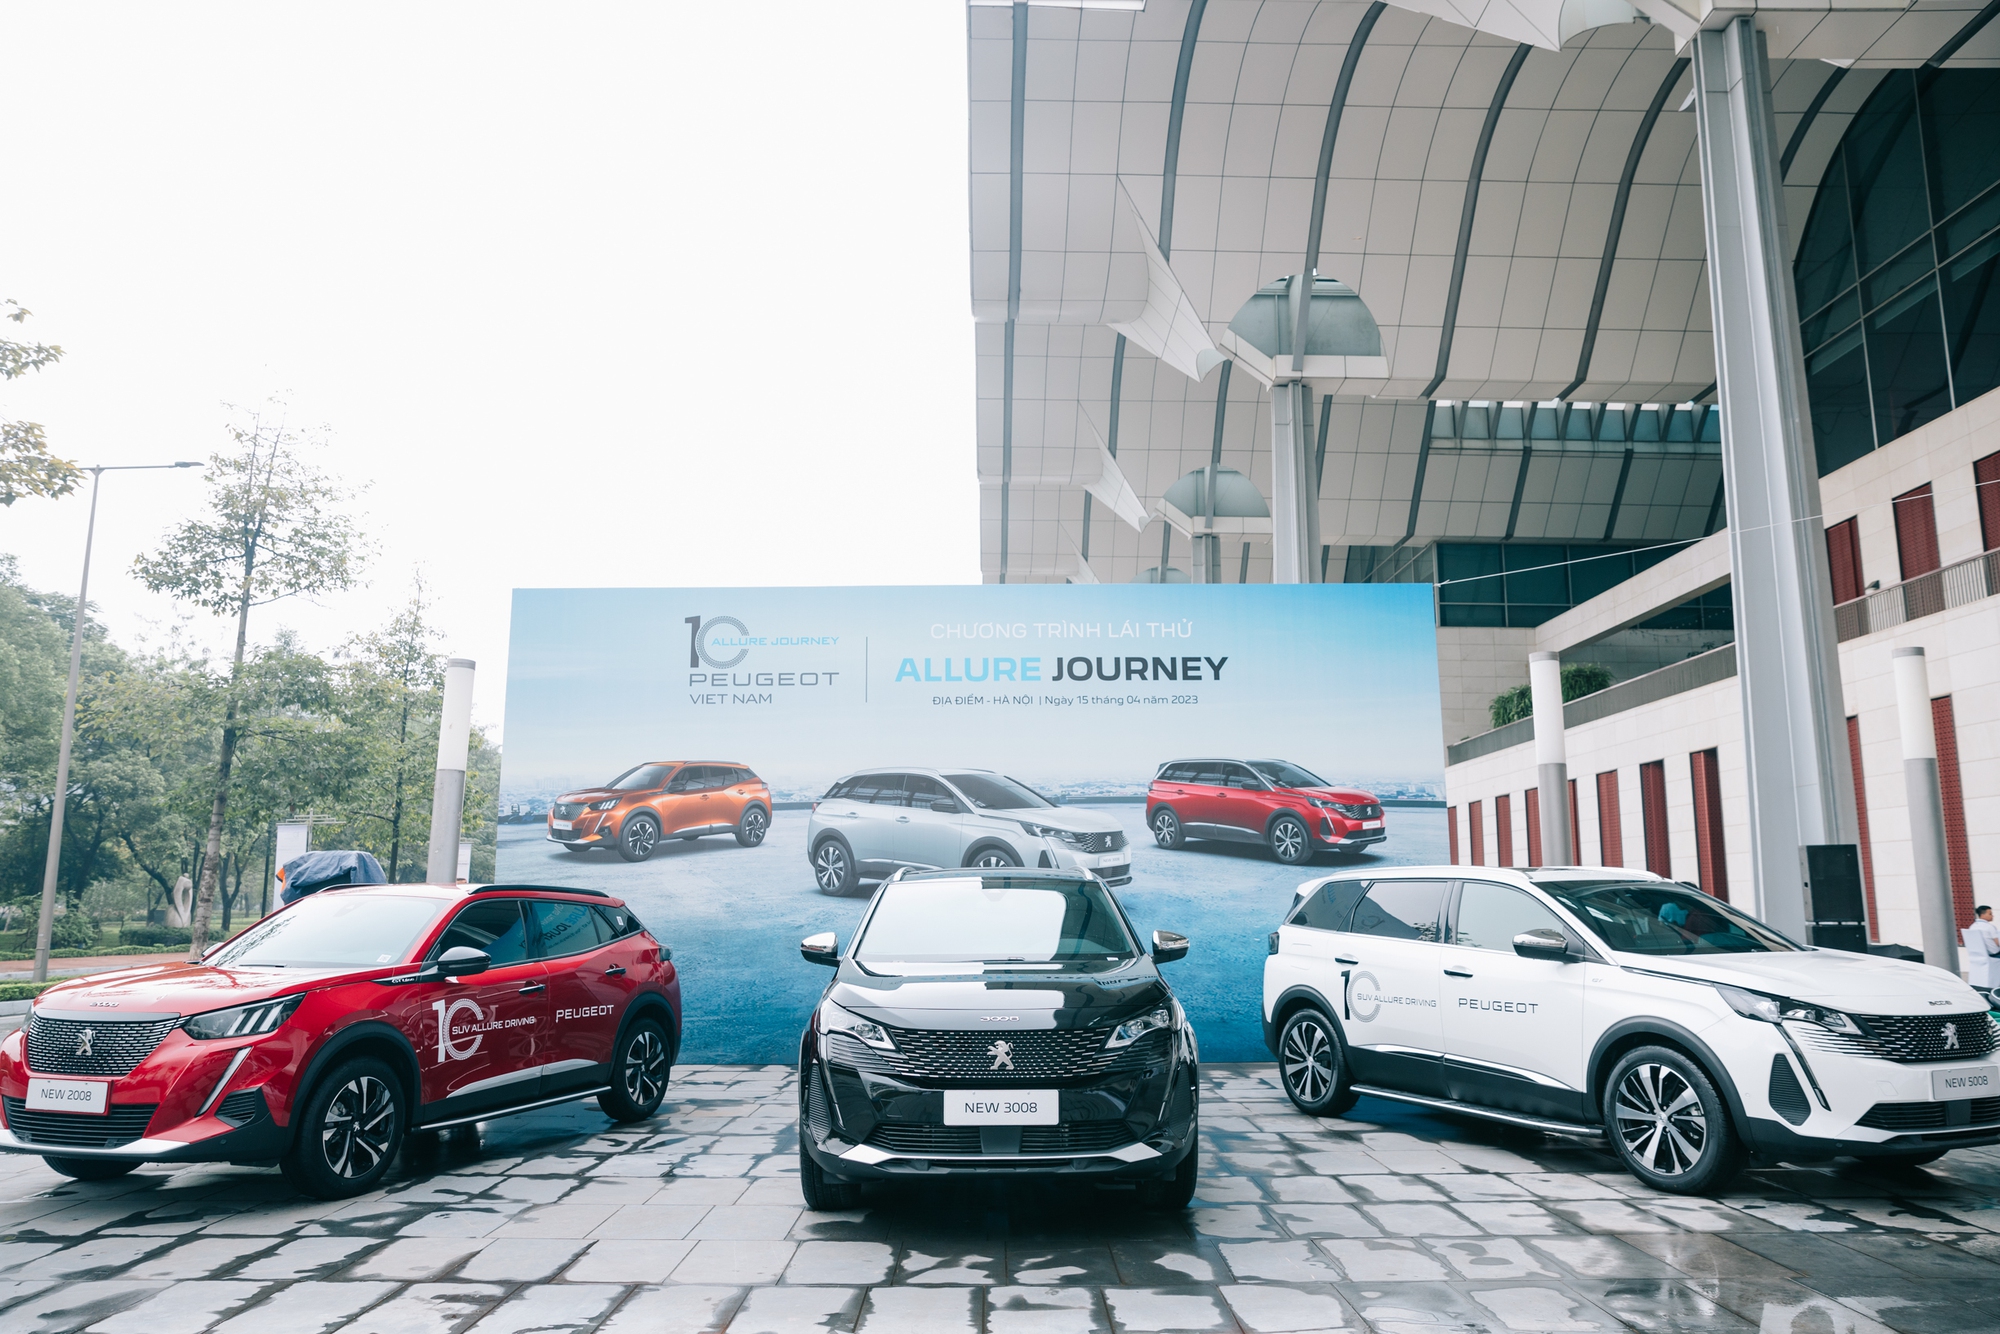 Trải nghiệm tại Peugeot Allure Journey, khách hàng ấn tượng với thiết kế đậm chất châu Âu - Ảnh 1.